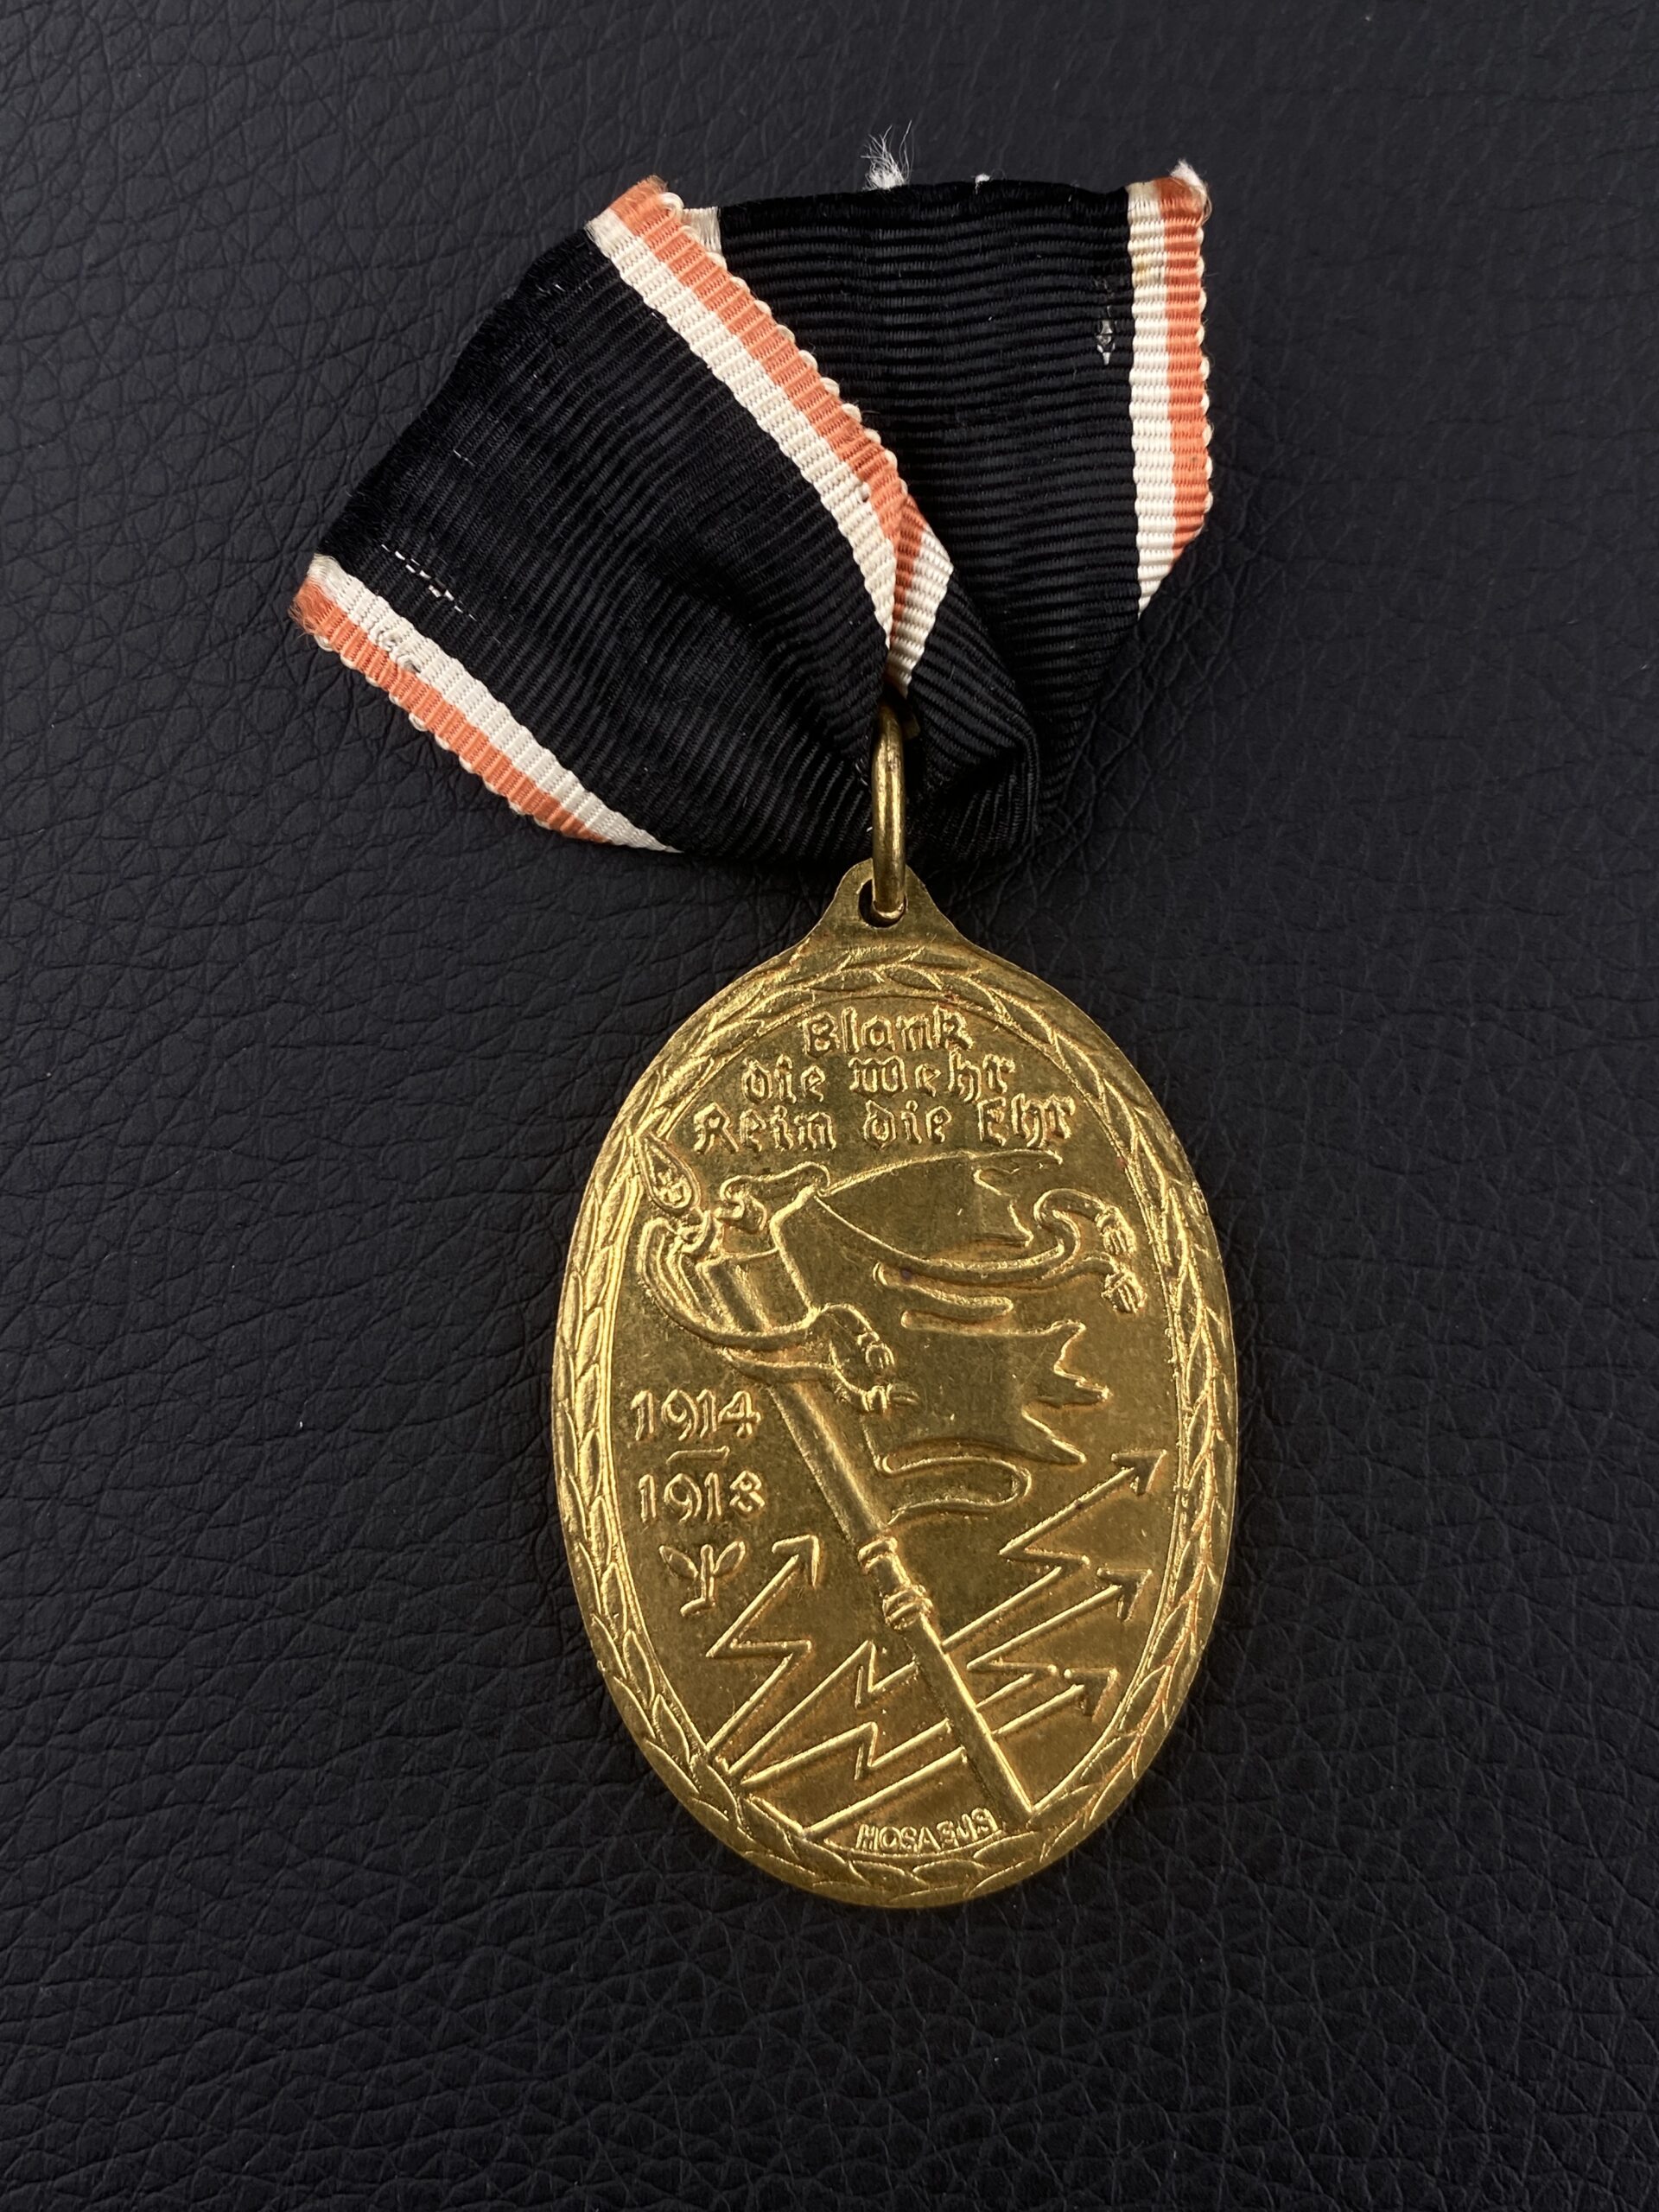 Медаль “Рваные знамена”. Медаль Союза “Кифхойзер”, учреждённая 18 июня 1921 года Немецким обществом ветеранов войны “Кифхойзербунд”.